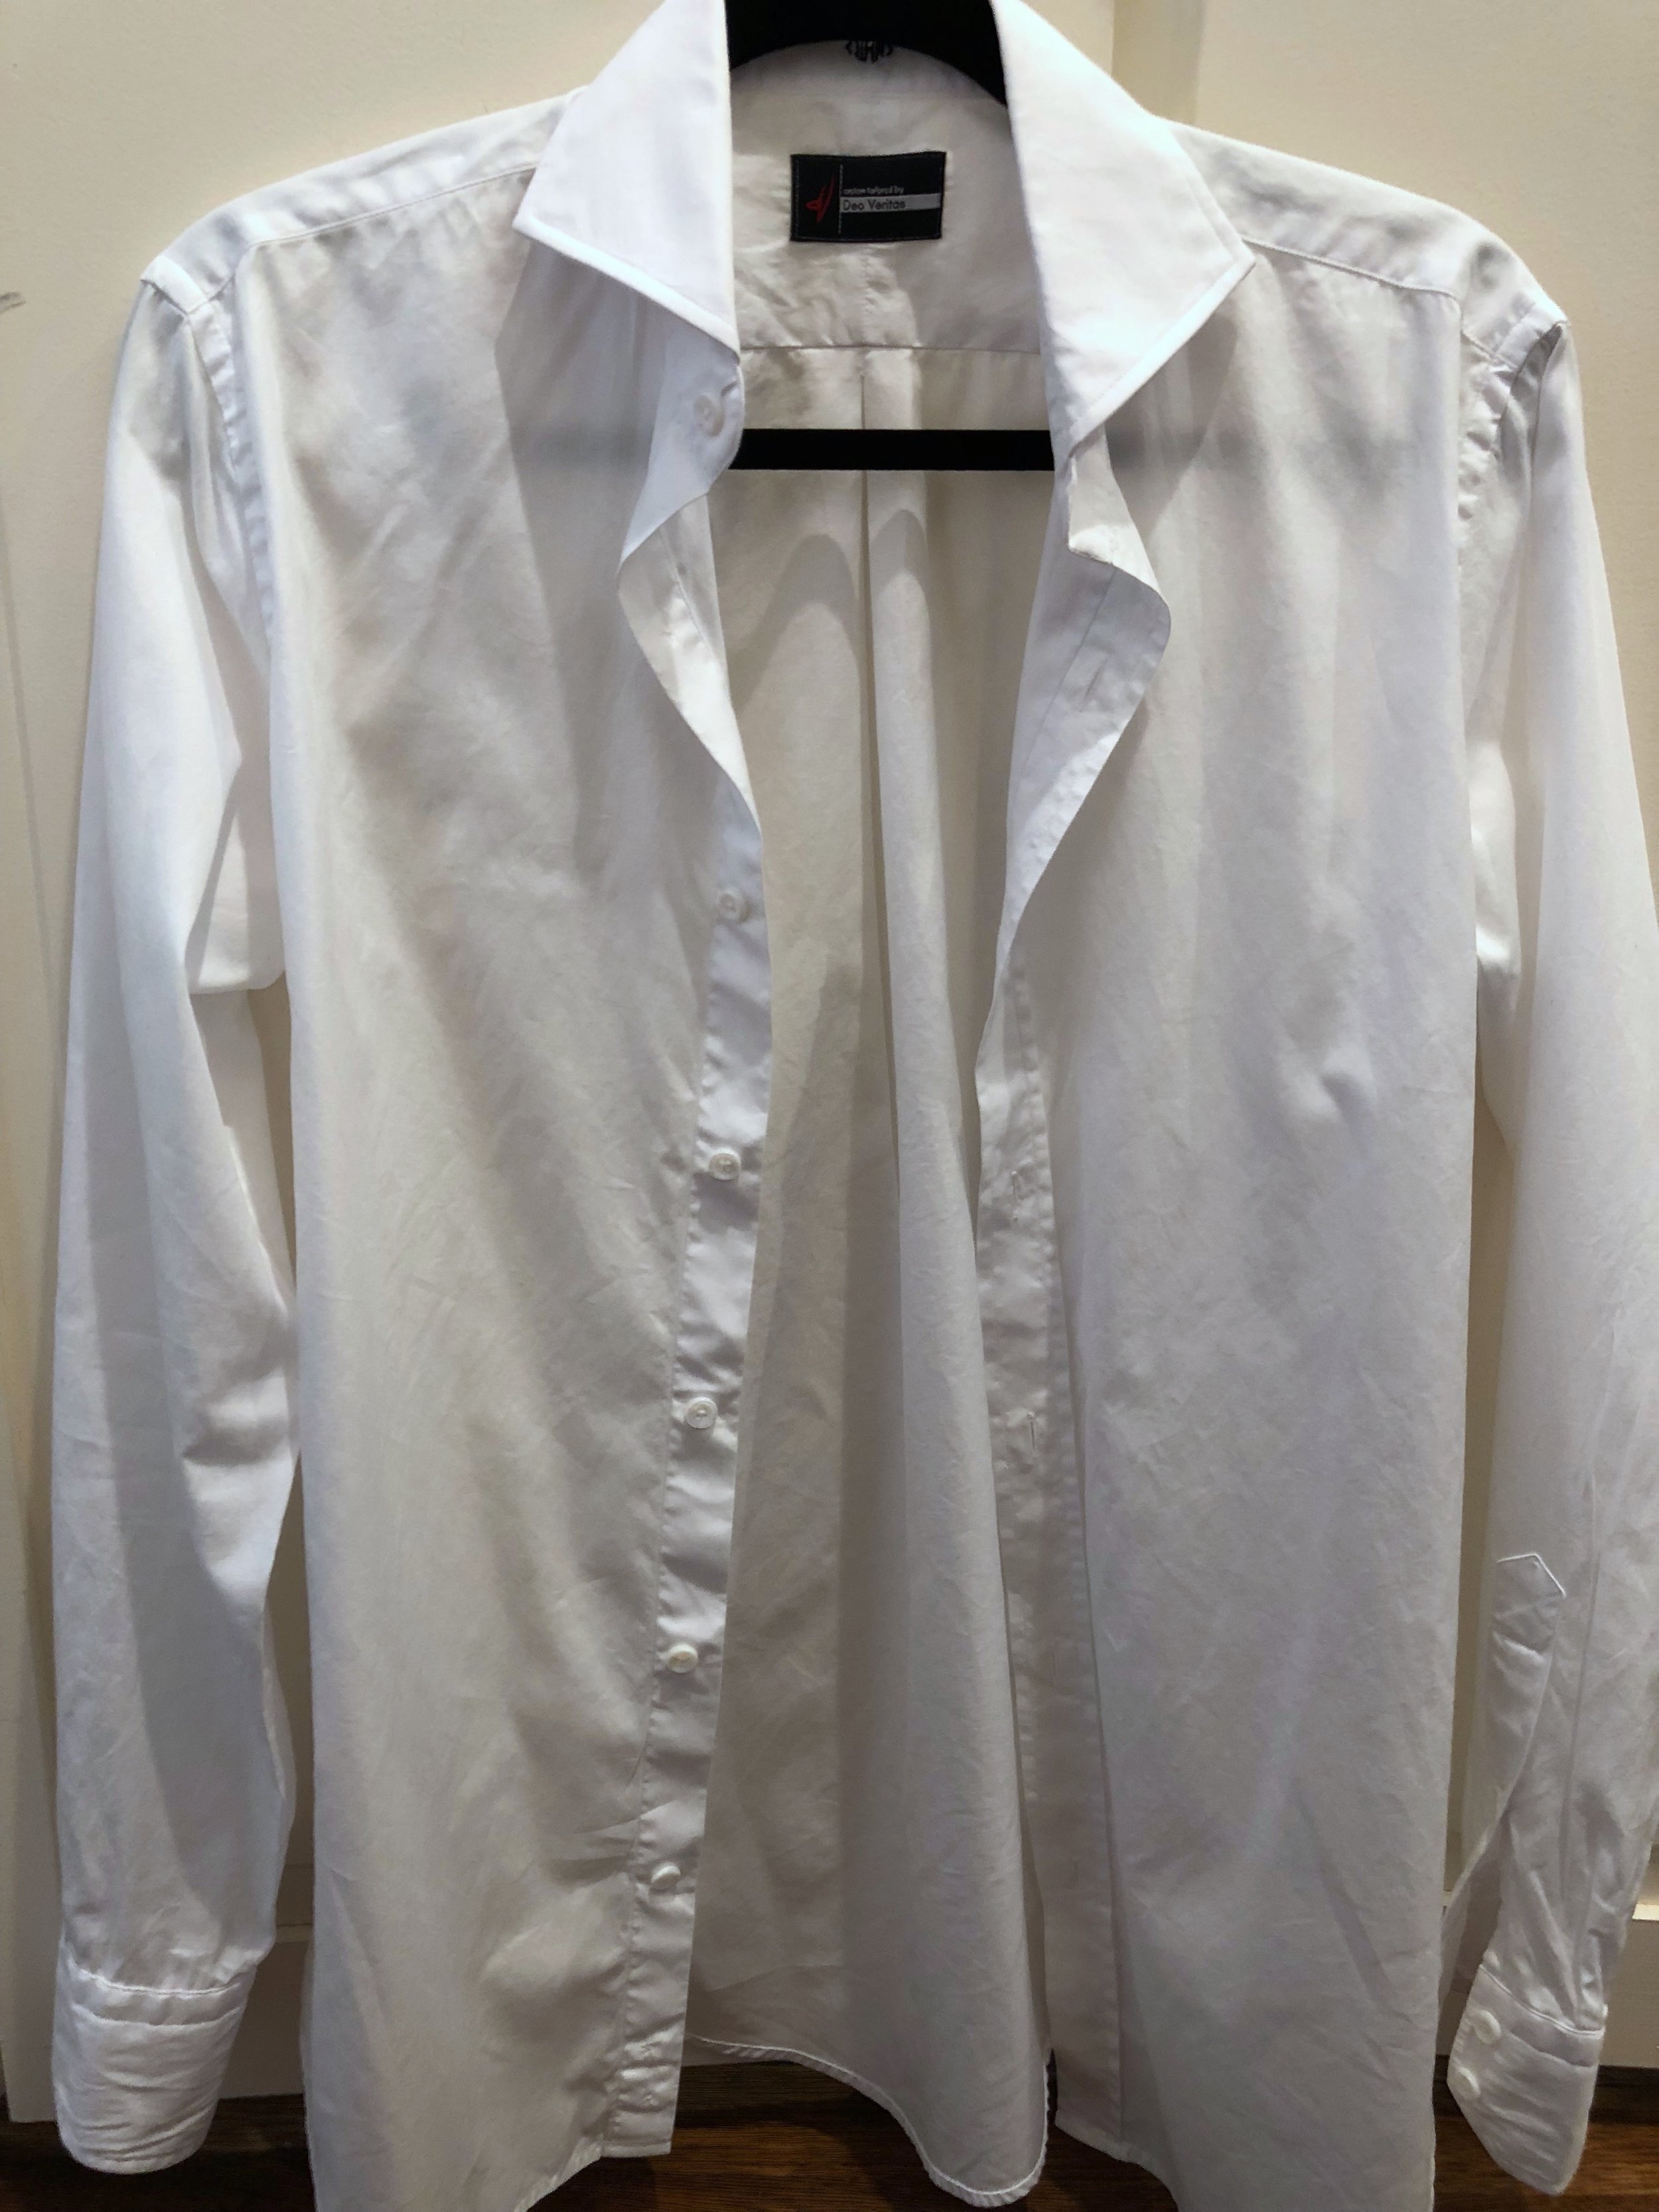 Deo Veritas Custom Dress Shirt Review (Part 2): Super High-End Fabrics ...